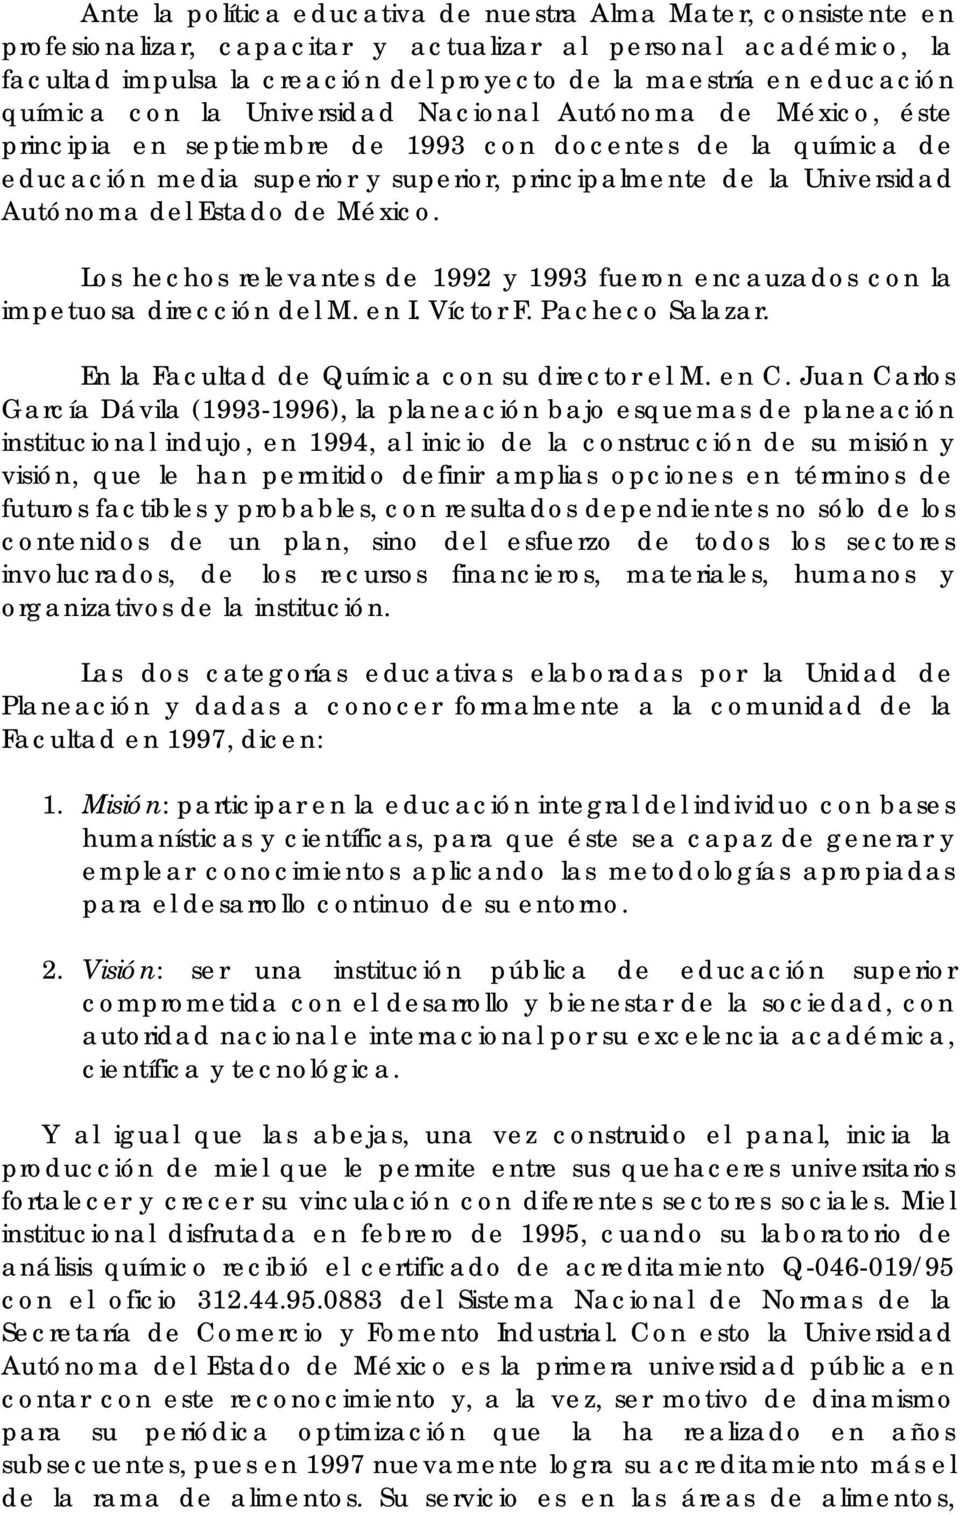 Universidad Autónoma del Estado de México. Los hechos relevantes de 1992 y 1993 fueron encauzados con la impetuosa dirección del M. en I. Víctor F. Pacheco Salazar.